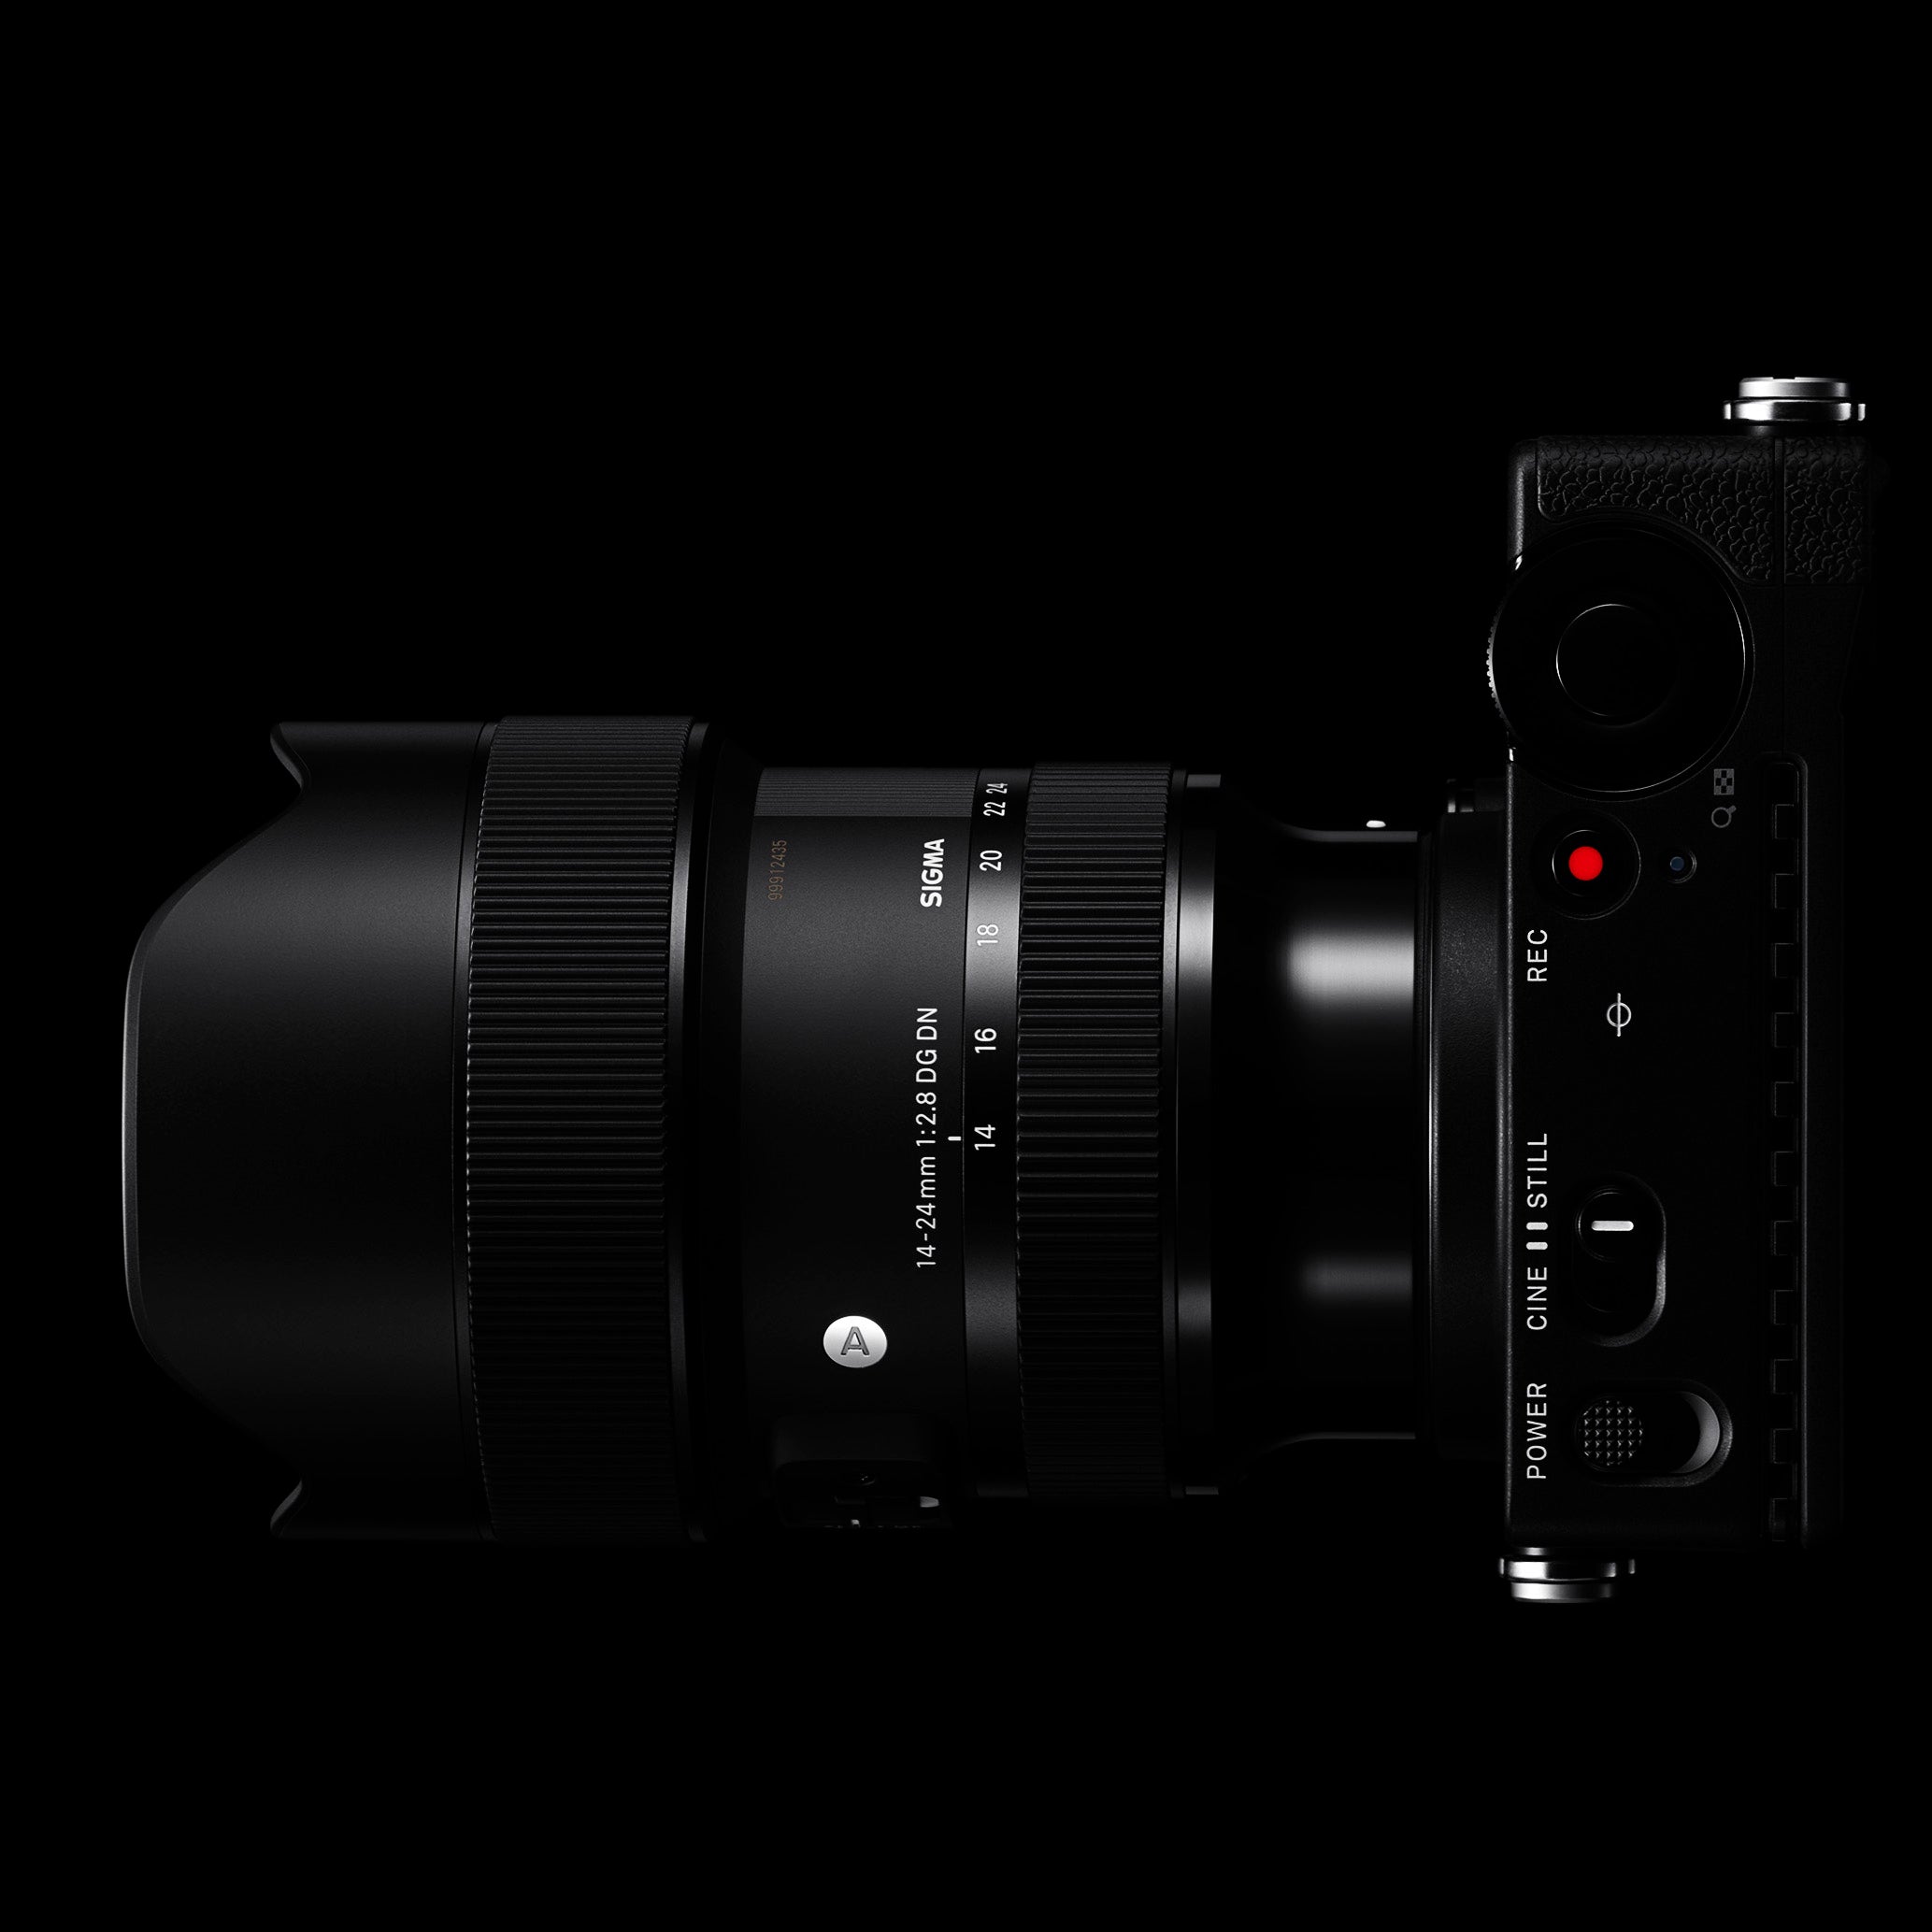 Sigma 14-24mm f2.8 DG DN Art Lens pour Sony E Mount